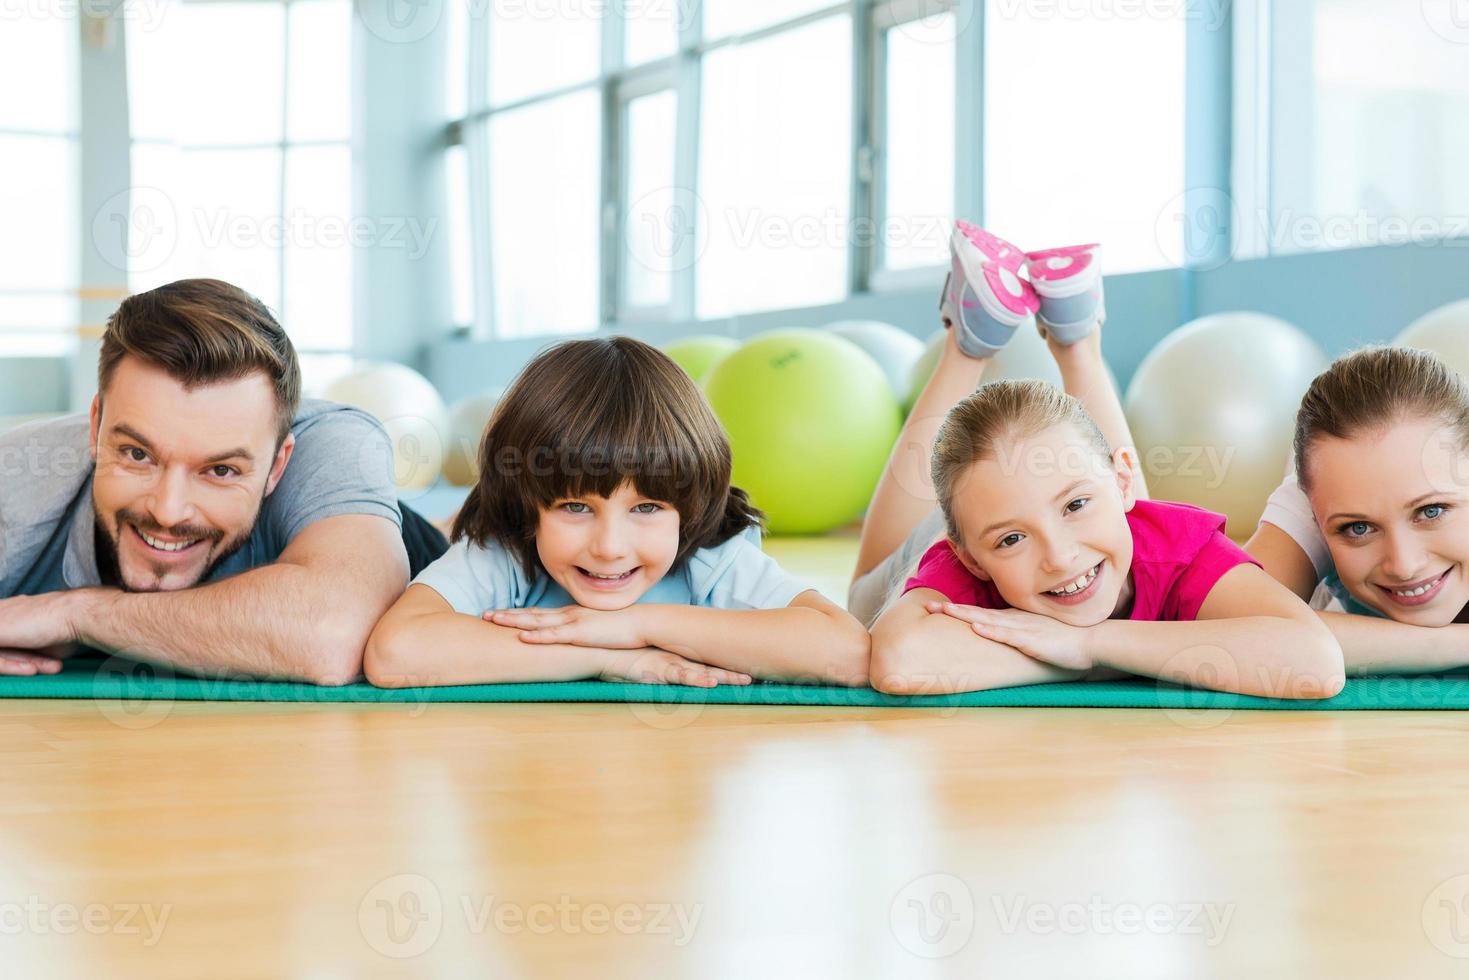 famille sportive heureuse. famille heureuse se liant les unes aux autres en position allongée sur un tapis d'exercice dans un club de sport photo